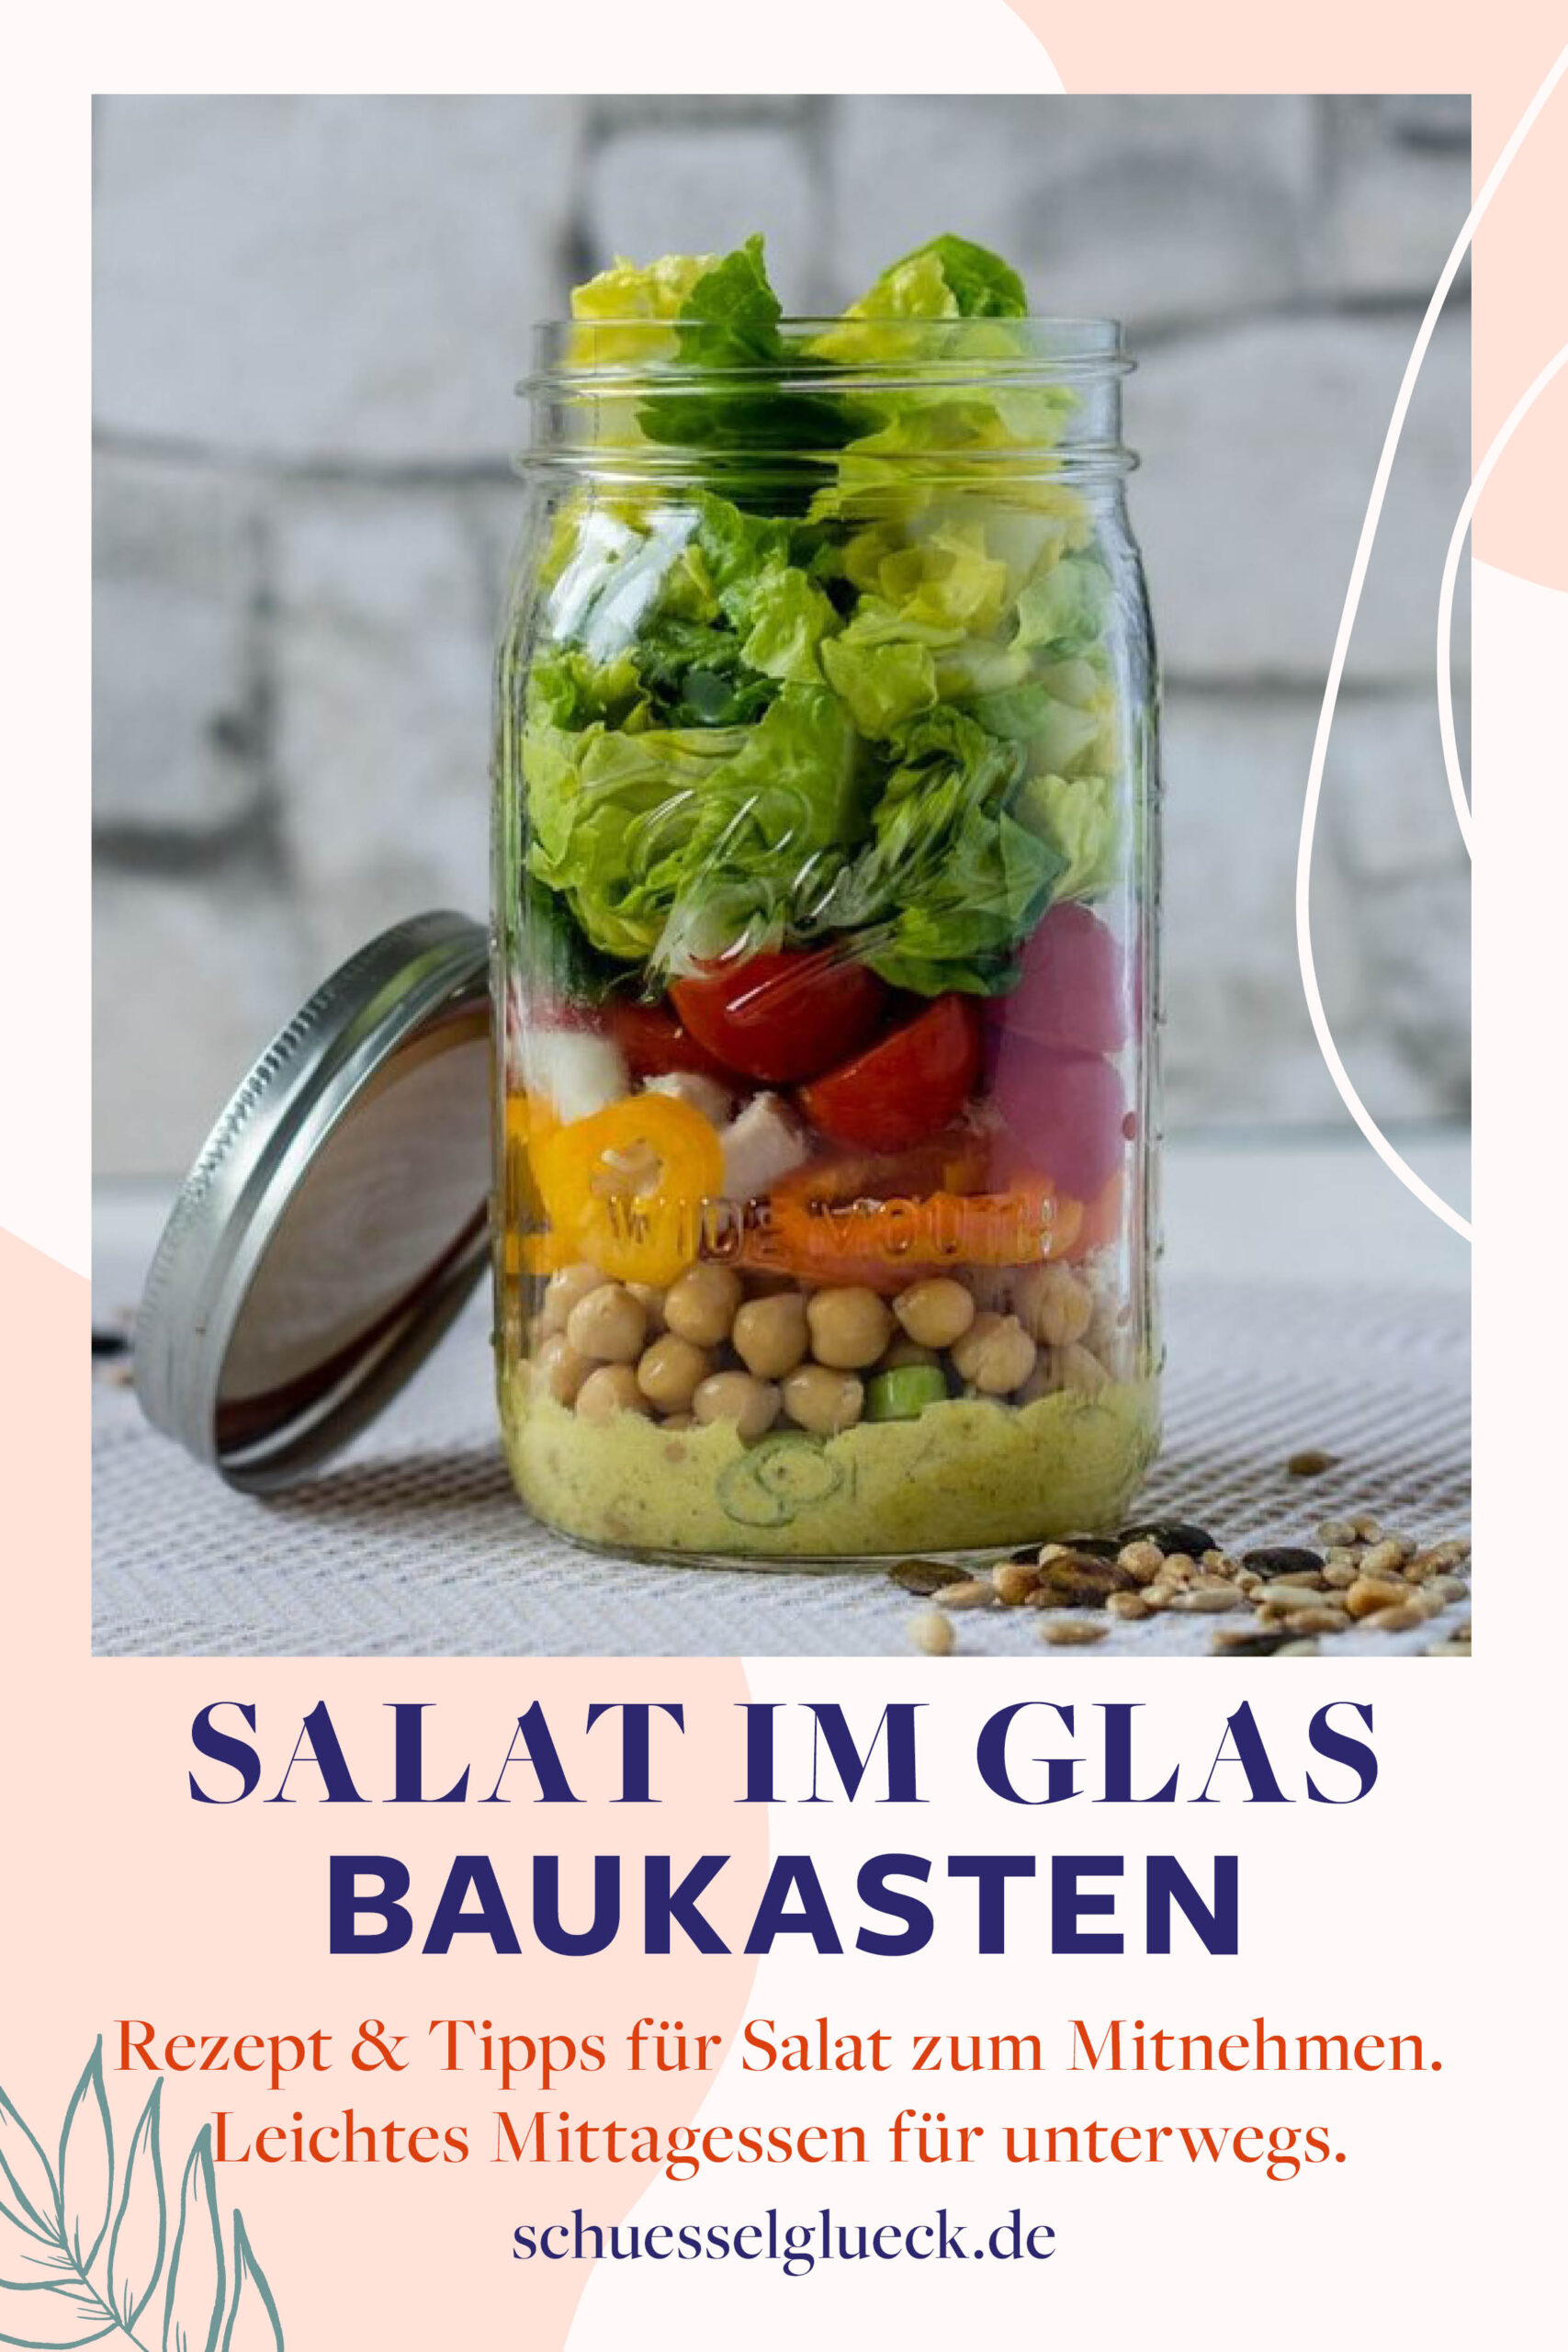 Salat im Glas Baukasten: Sommerliches Lunch Glück zum mitnehmen